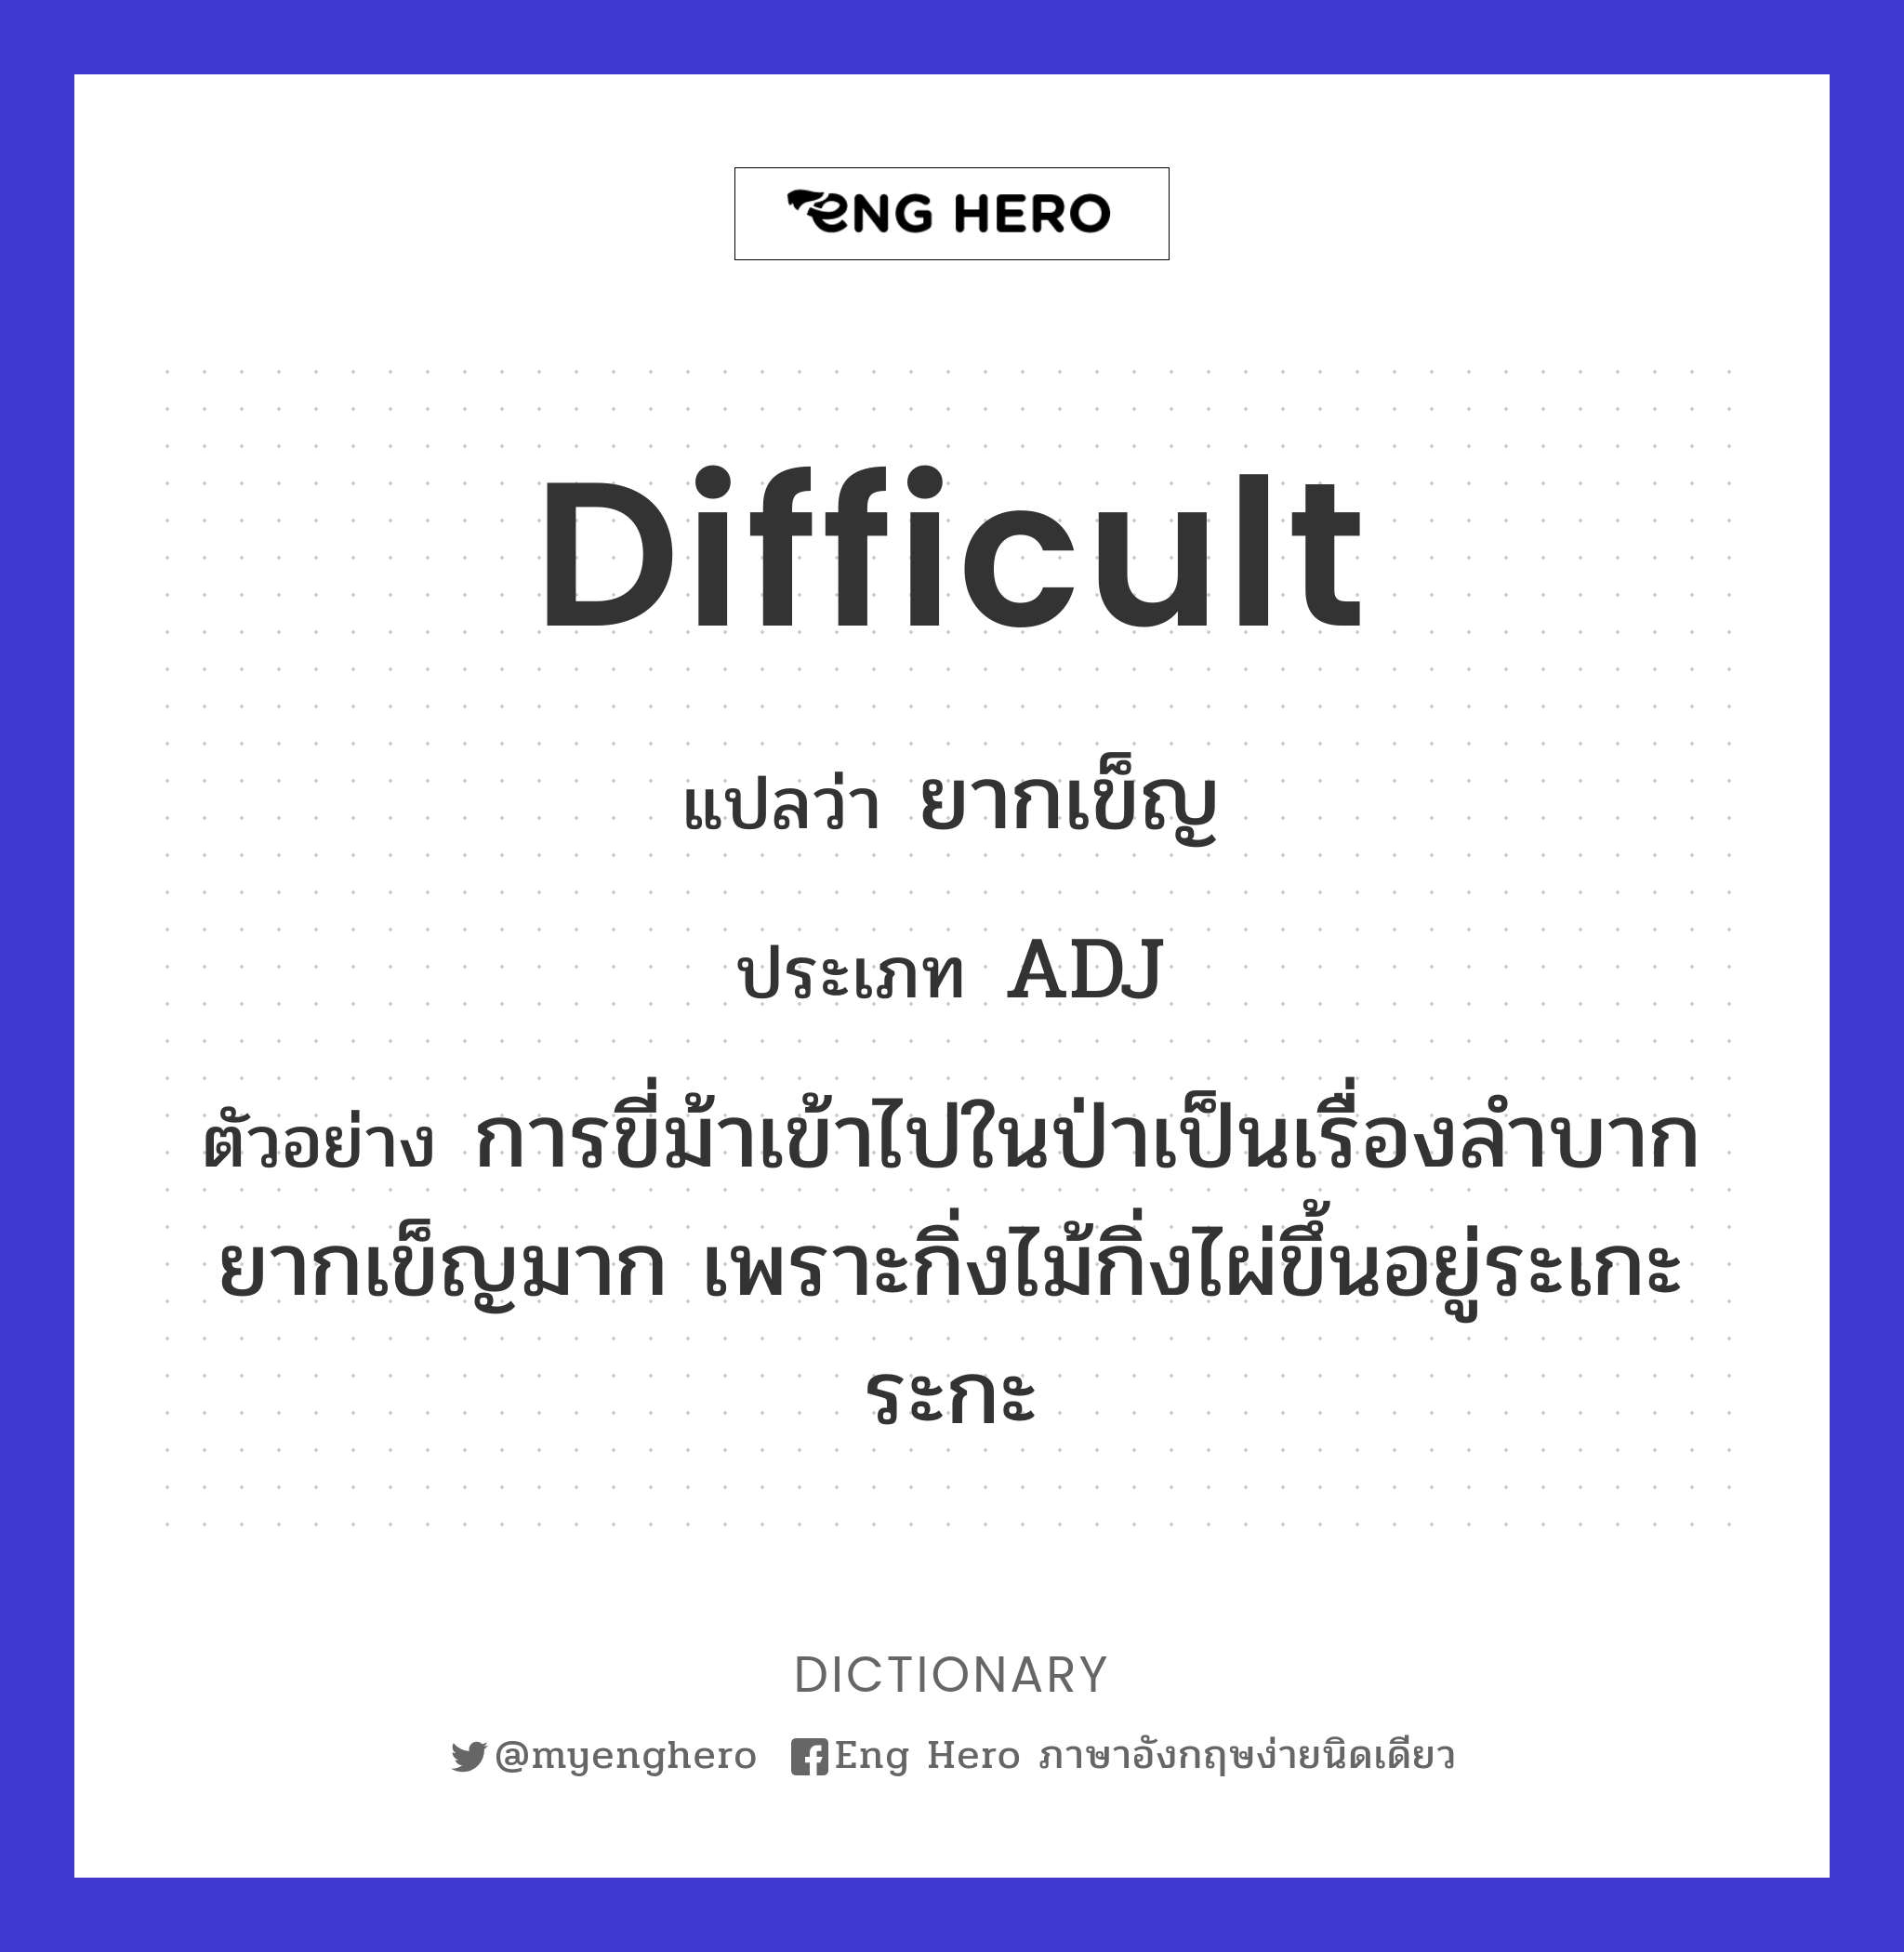 difficult